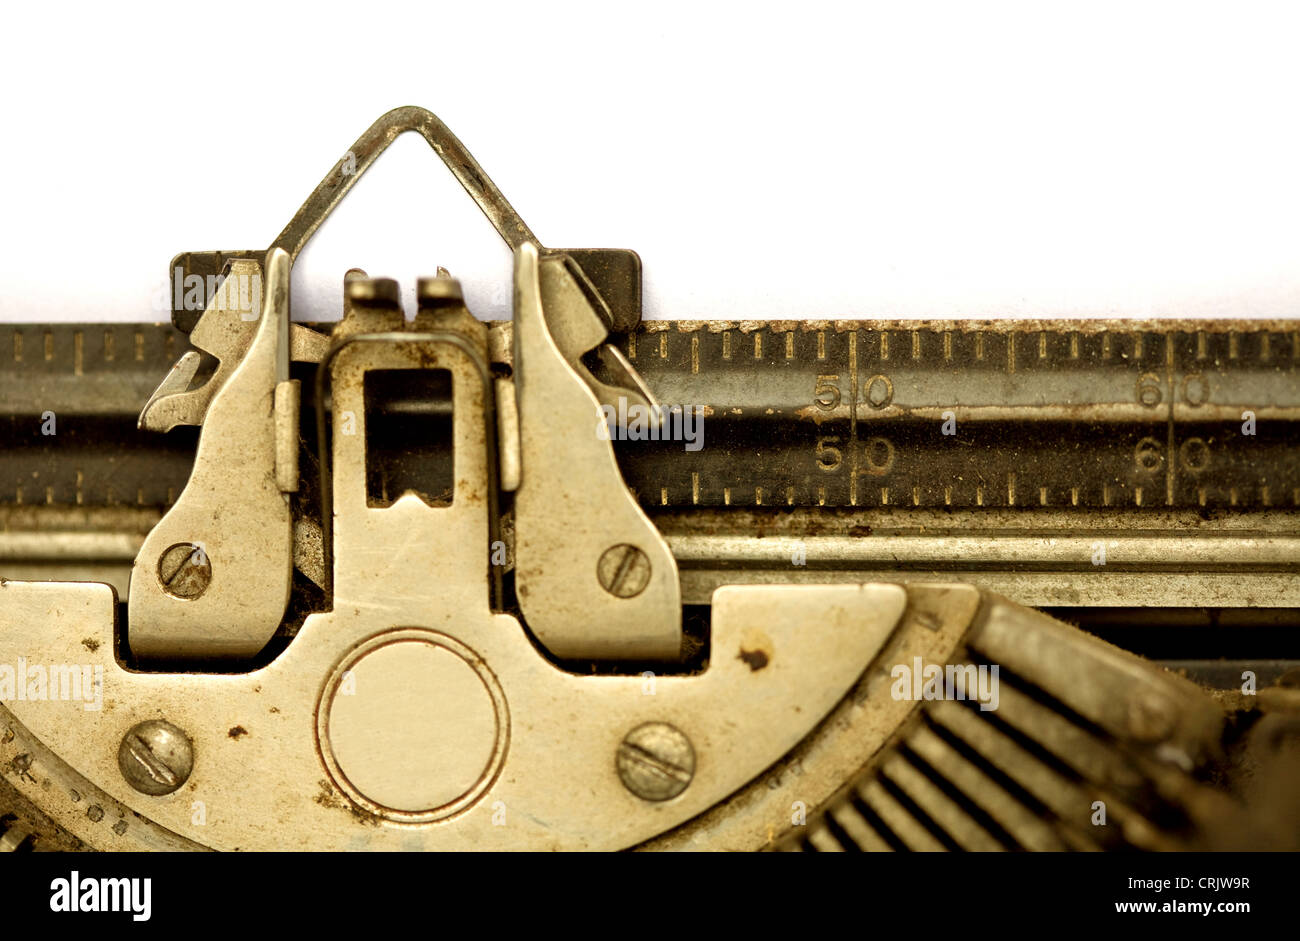 aged typewriter Stock Photo